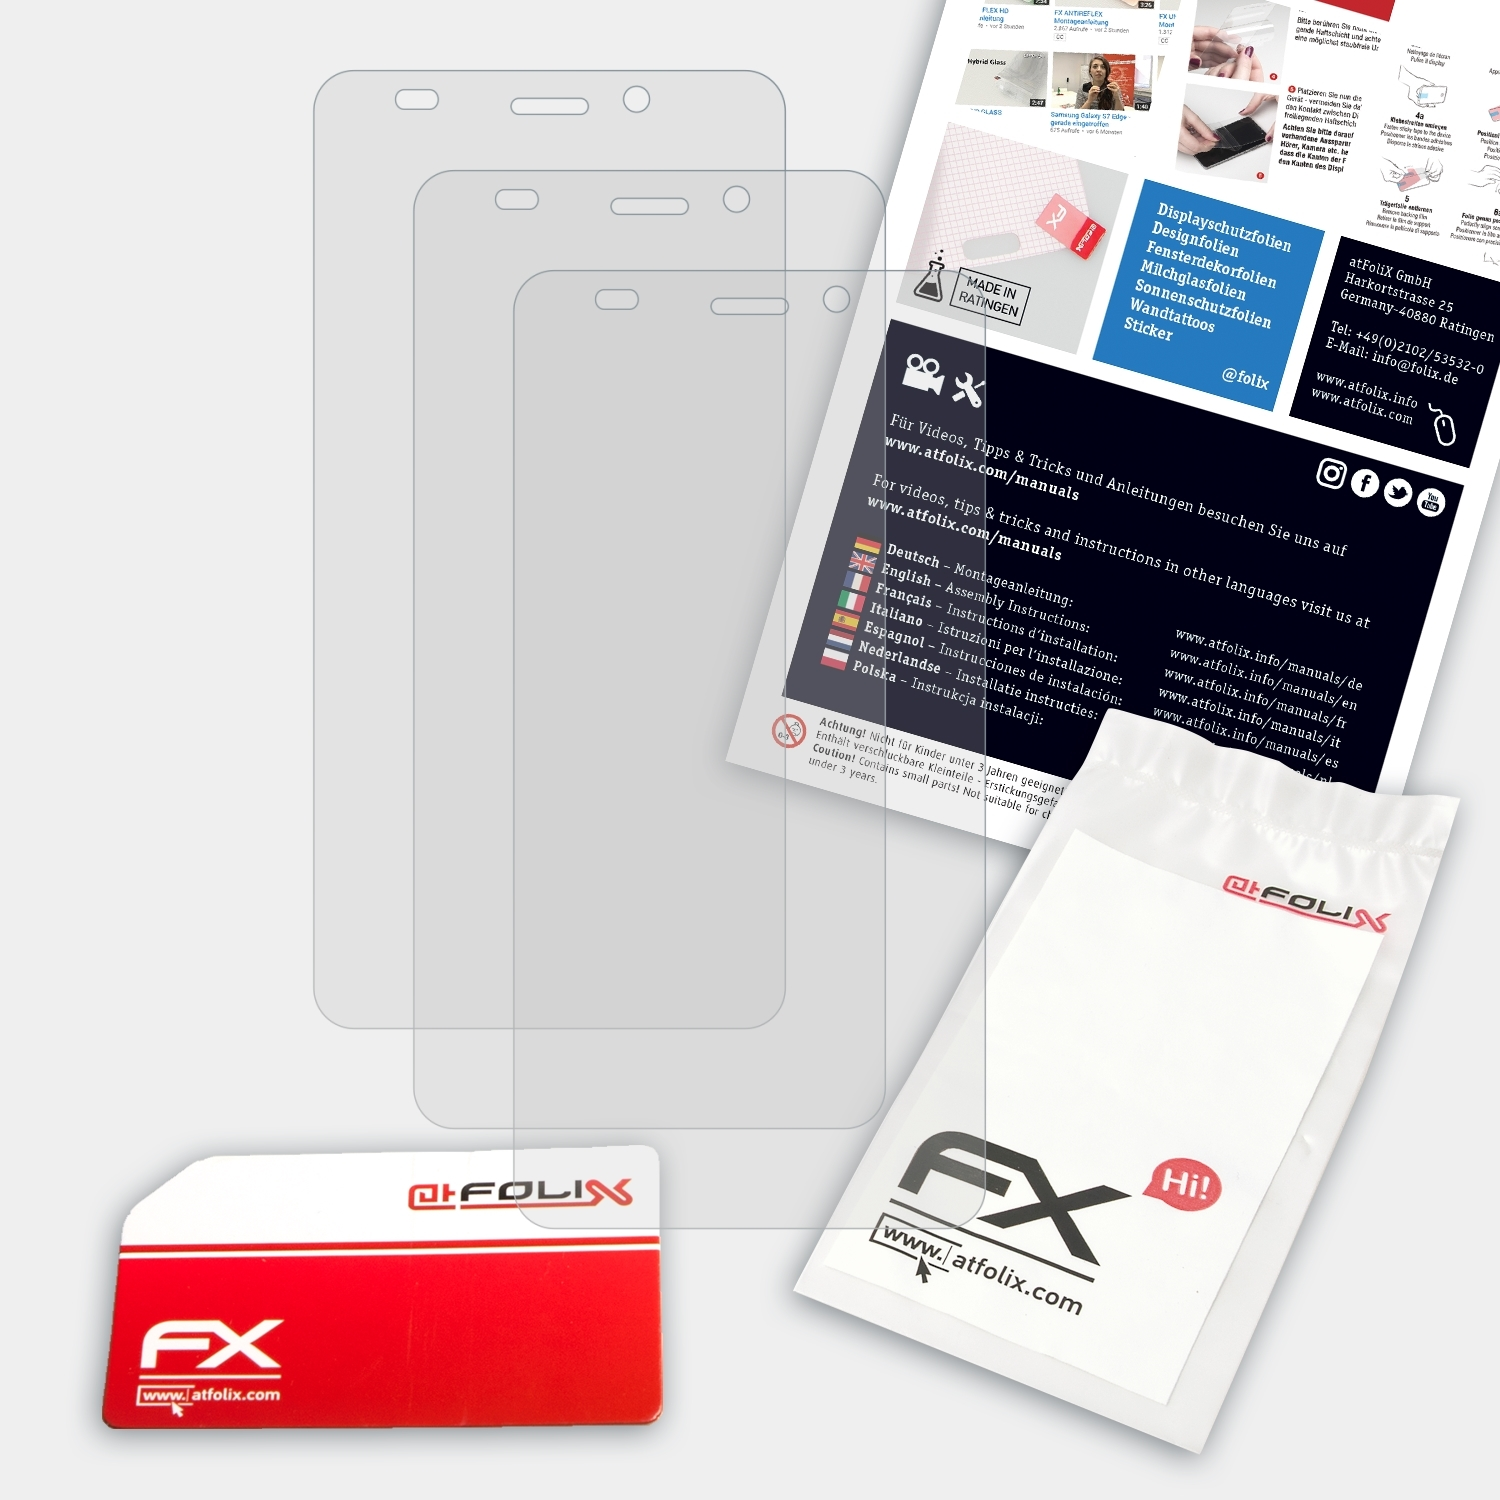 ATFOLIX 3x FX-Antireflex Displayschutz(für Fantec Limbo)